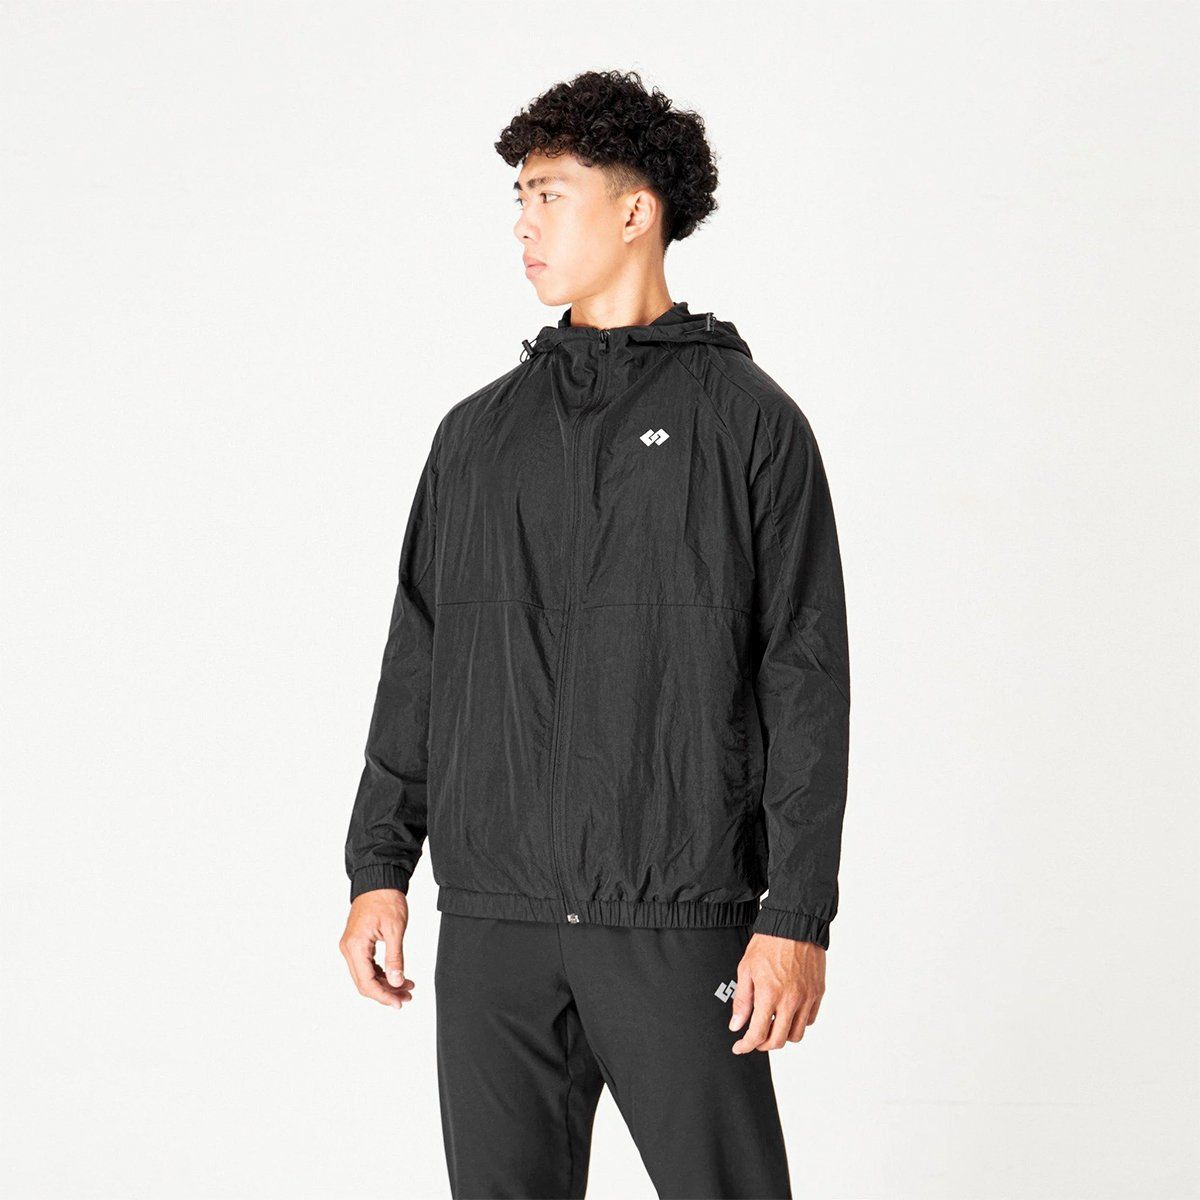  Áo khoác GG Waterproof Jacket dù nhăn (Full đen) 